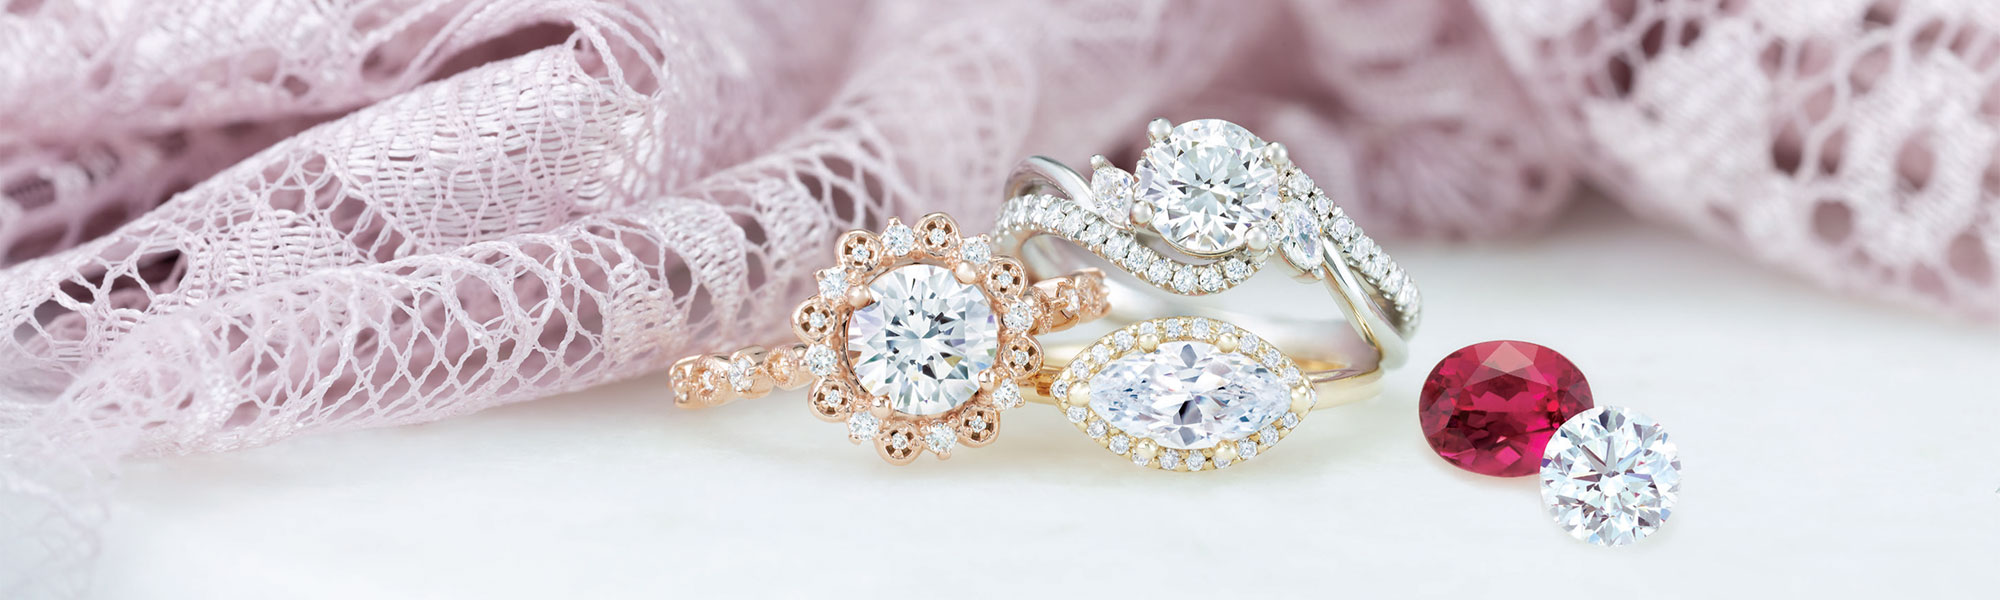 gemstones jewelry